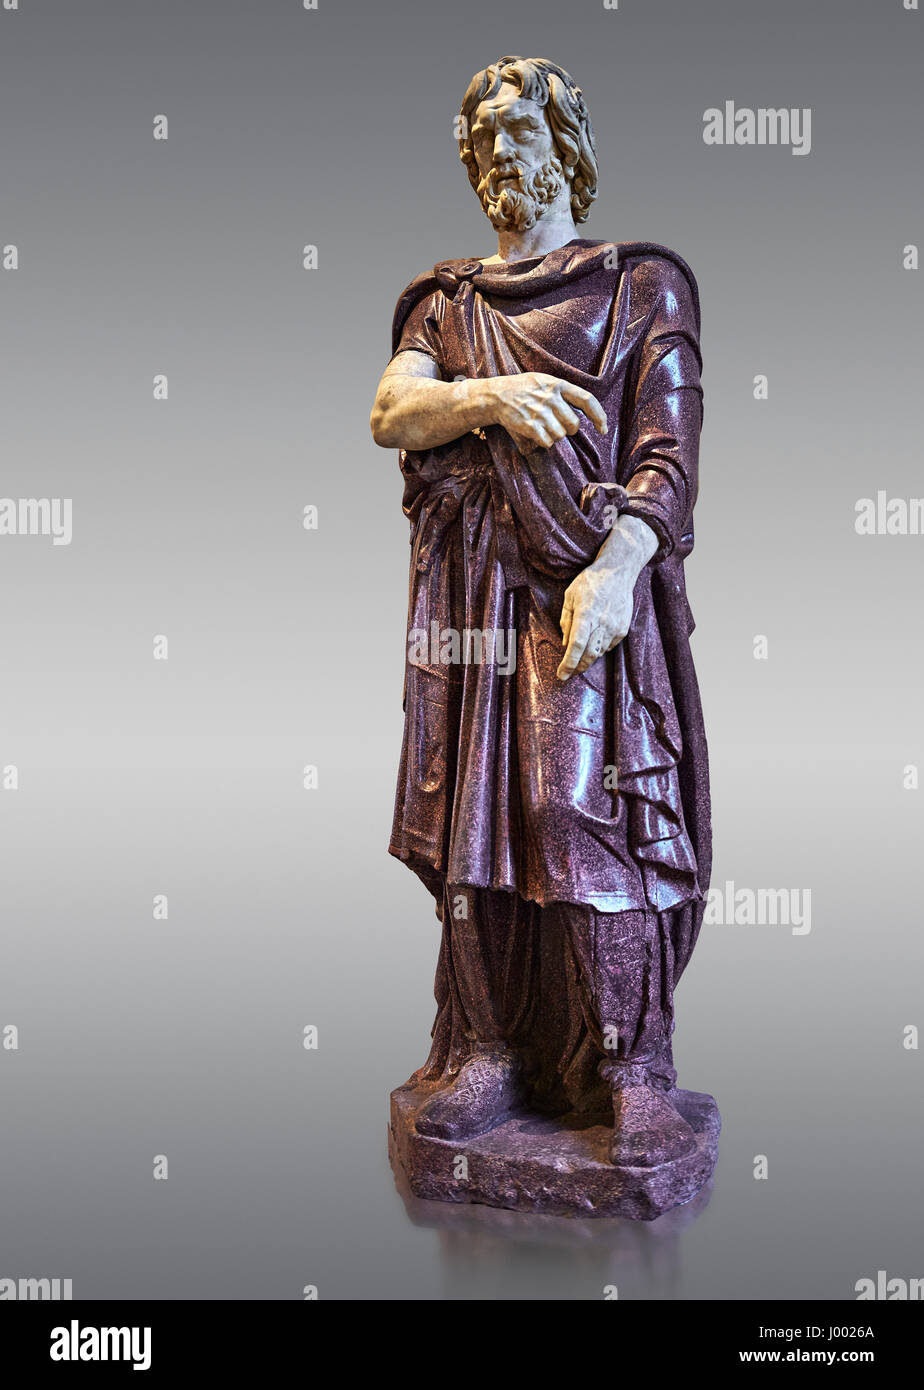 Statue eines Gefangenen Barbaren - 2. Jh. n. Chr. Römische Skulptur in Porphyr aus. Inv-Nr. Herr 331 oder Ma 1385, Louvre-Museum, Paris. Stockfoto